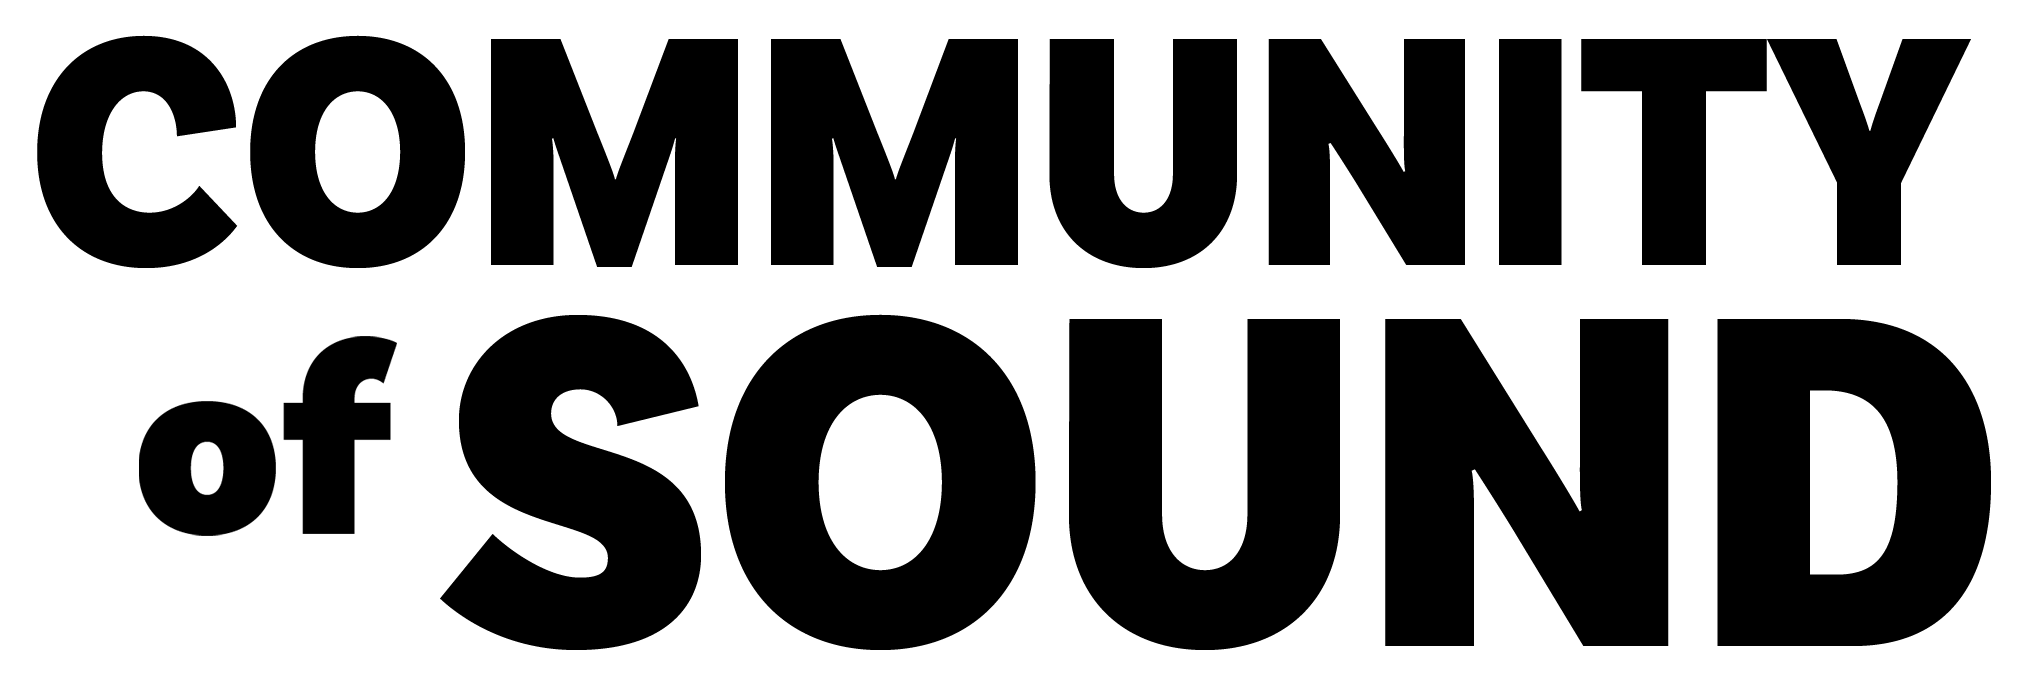 Community of Sound logo